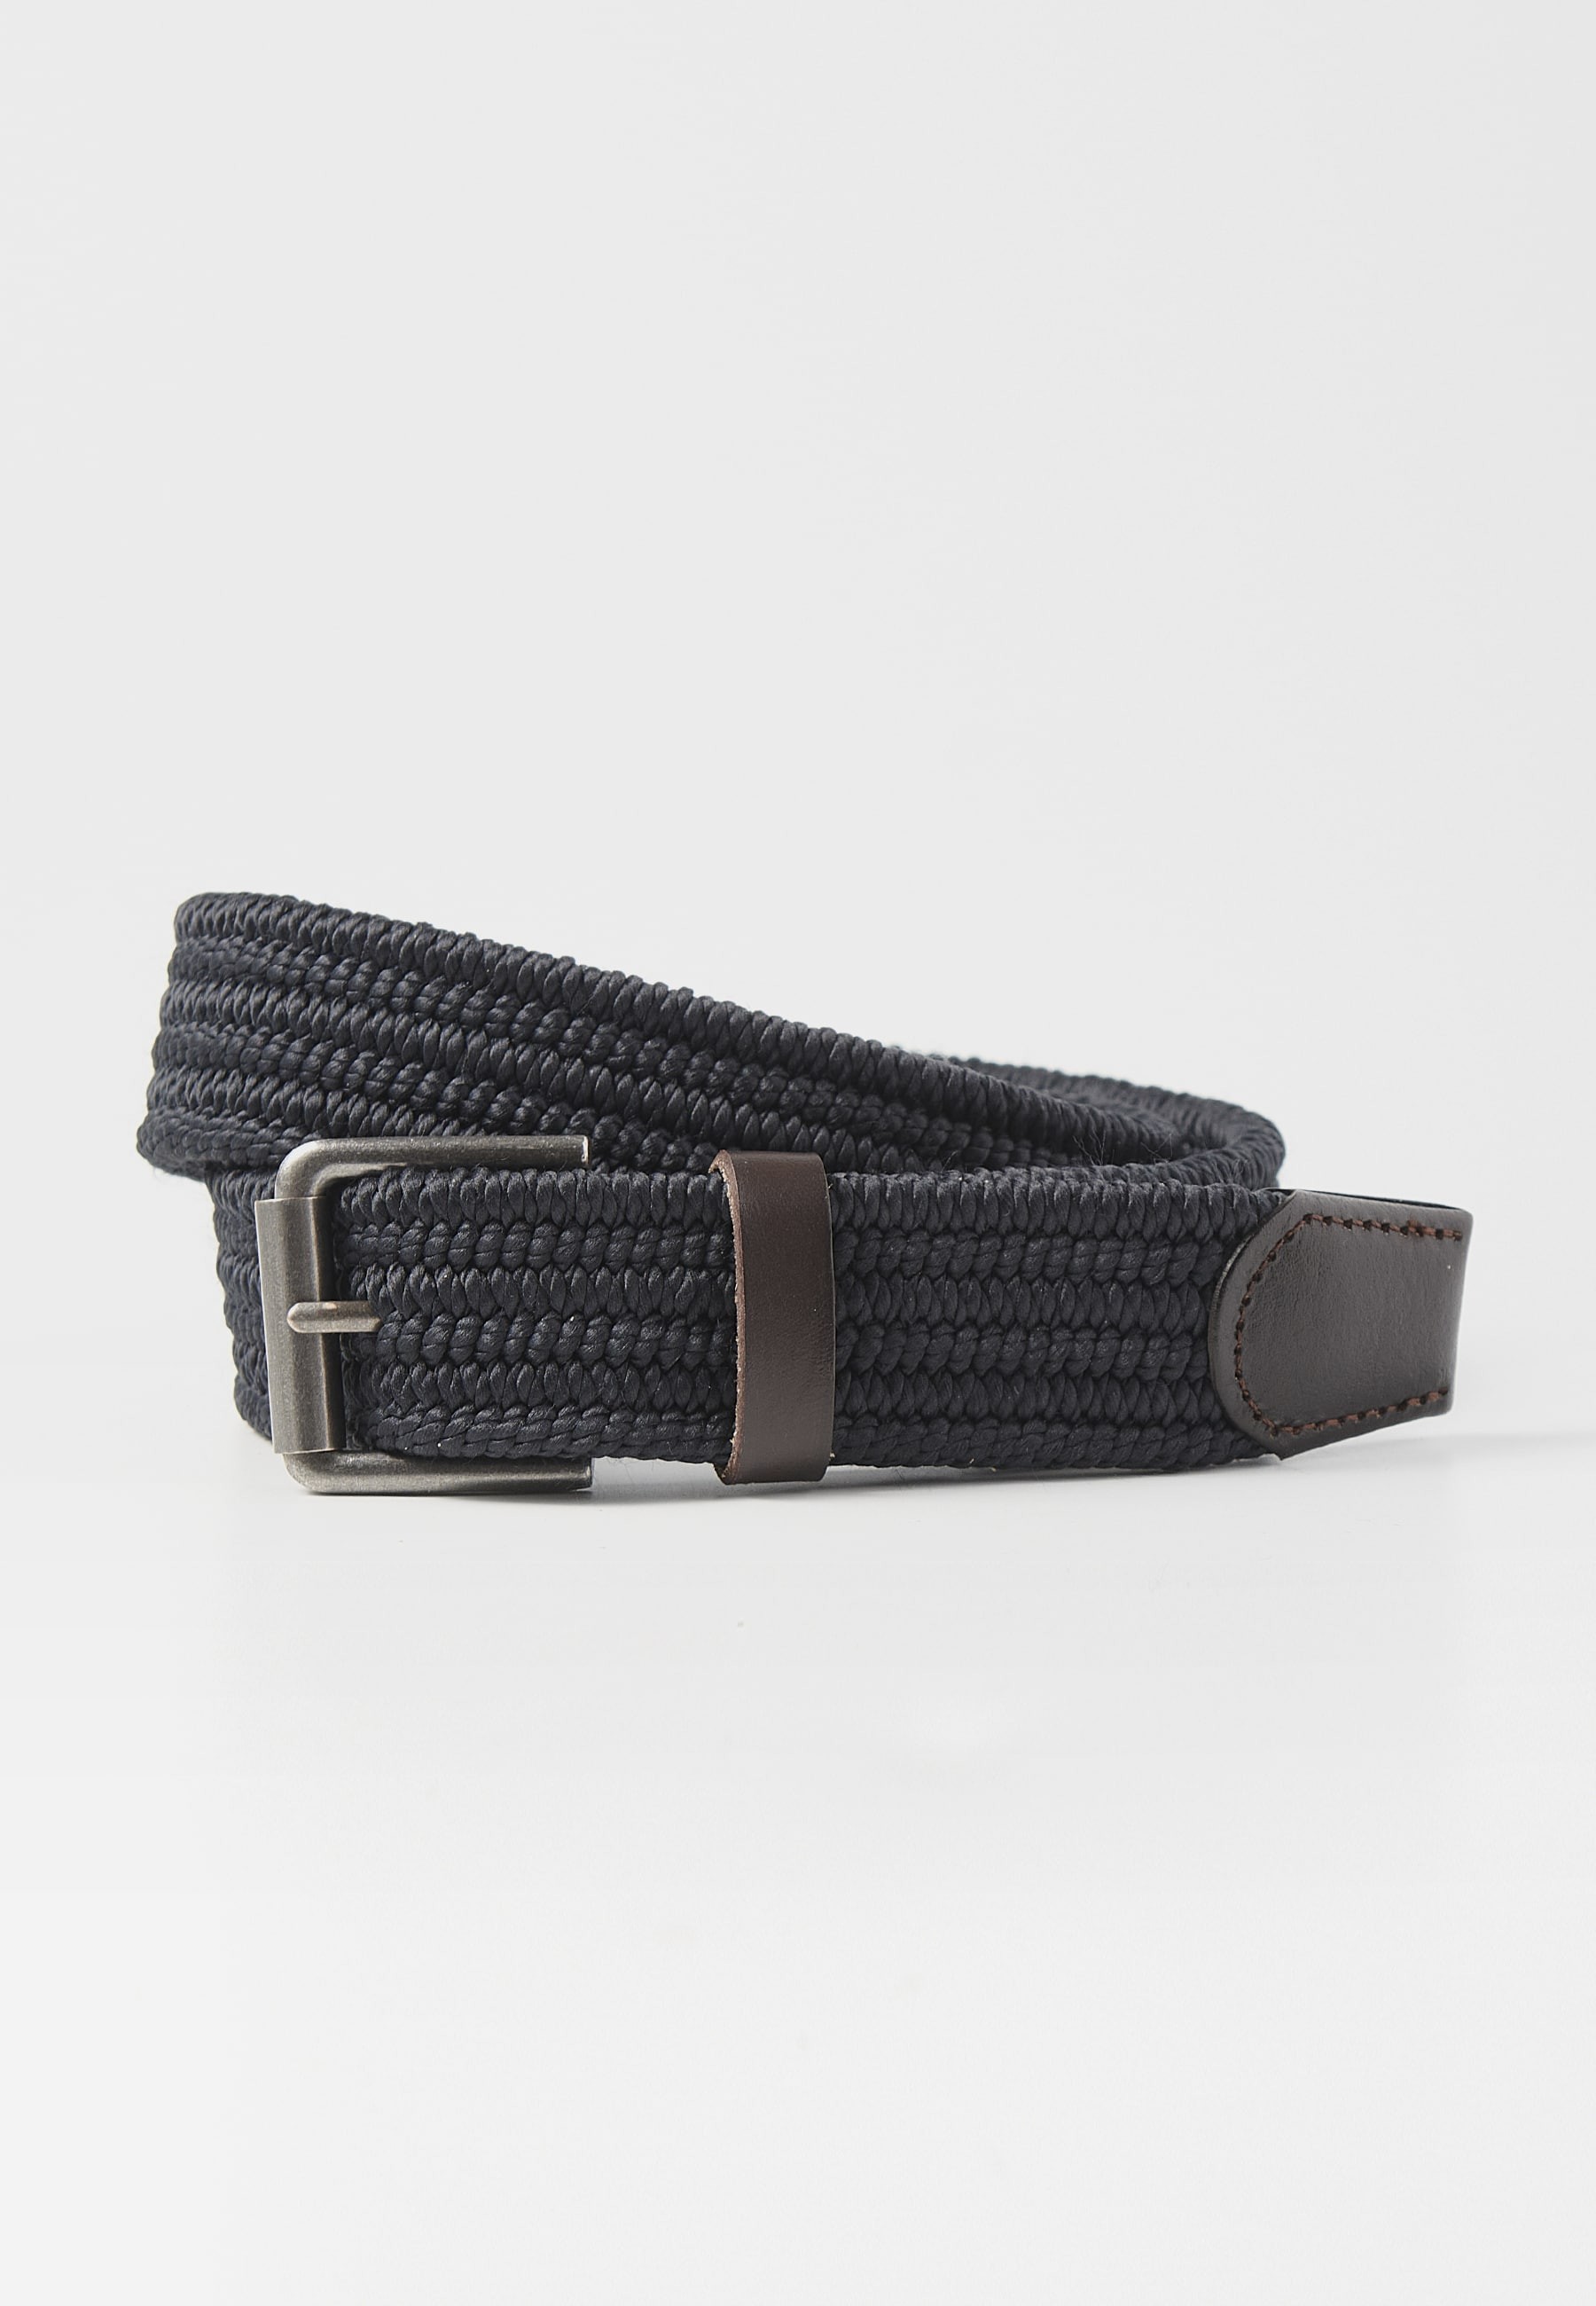 Cinturón de cinta elástica de color Negro para Hombre